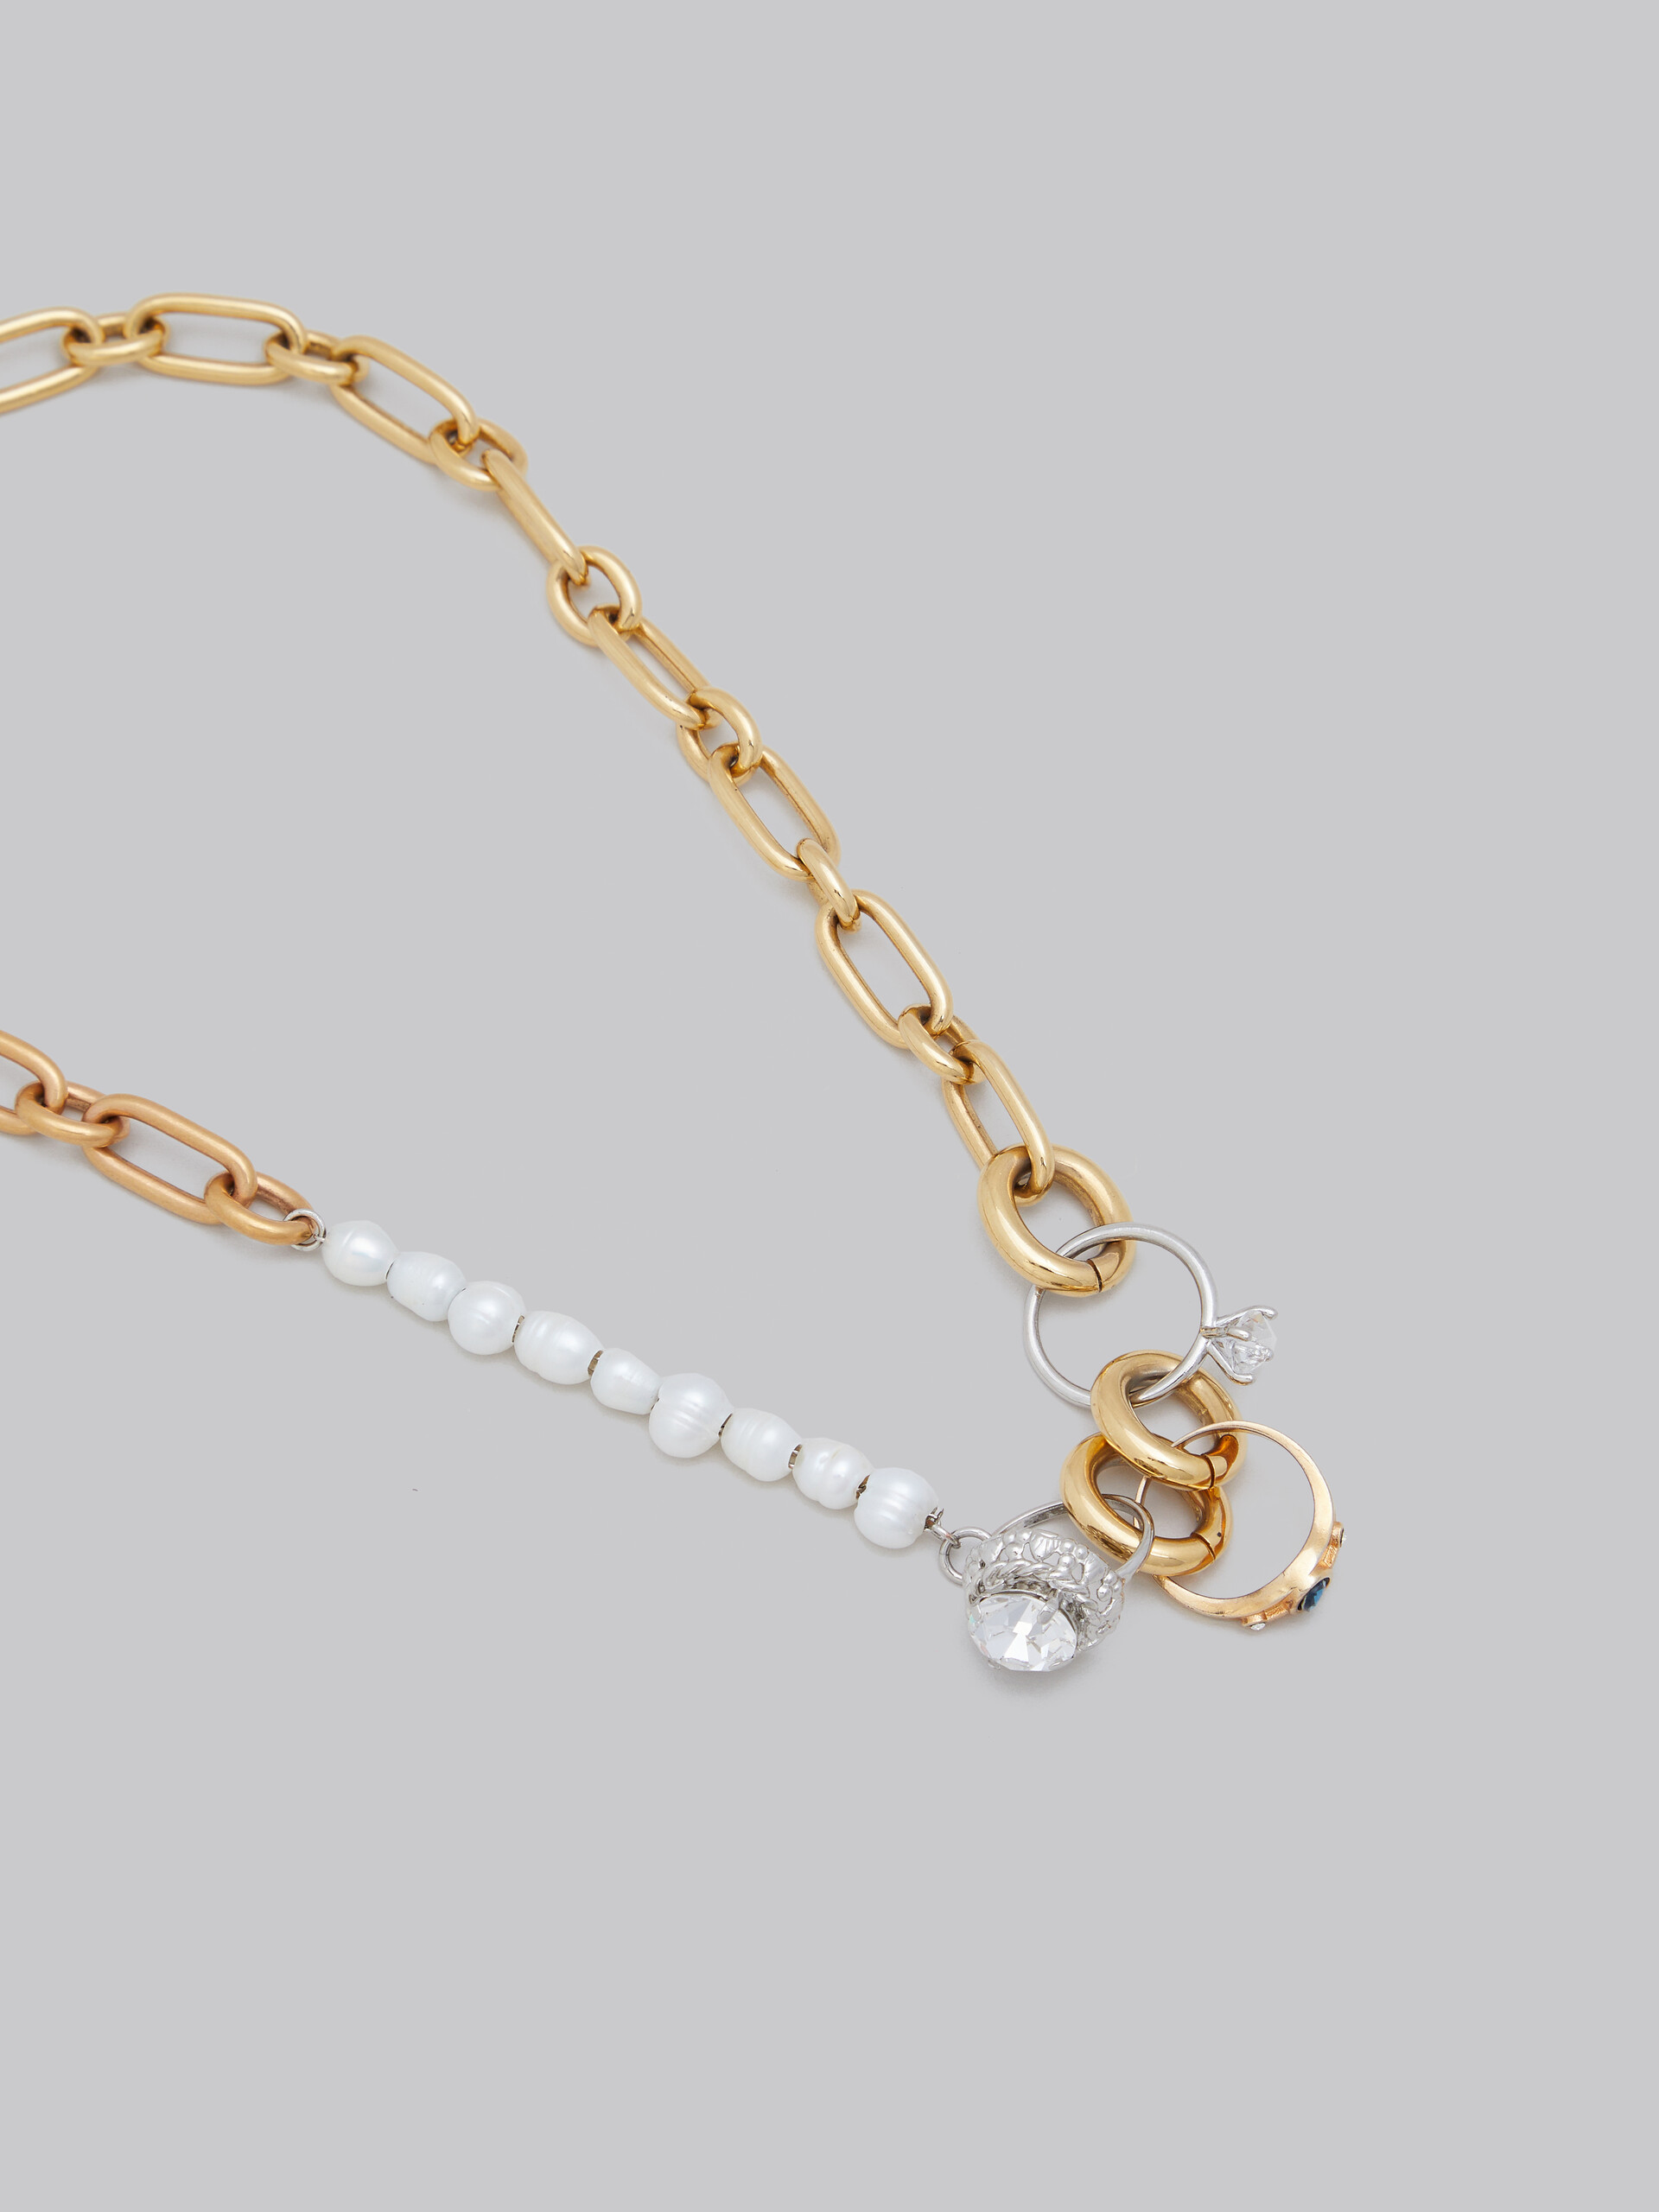 Collana con catena a maglie miste con perle e anelli gioiello - Collana - Image 3